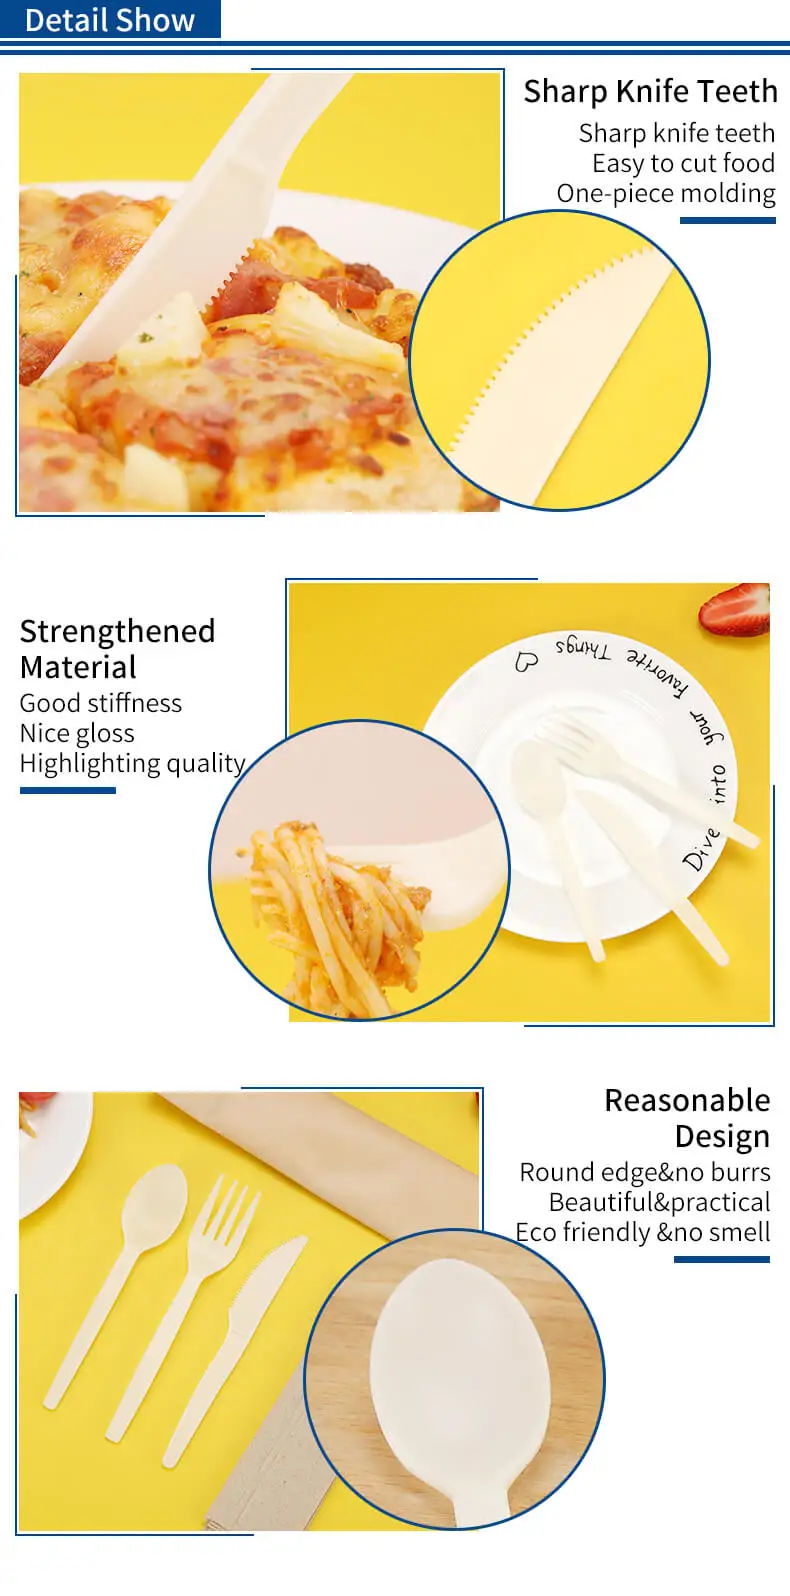 tenedores envueltos individualmente cubiertos de almidón de maíz cuchara de plástico transparente para servir utencils